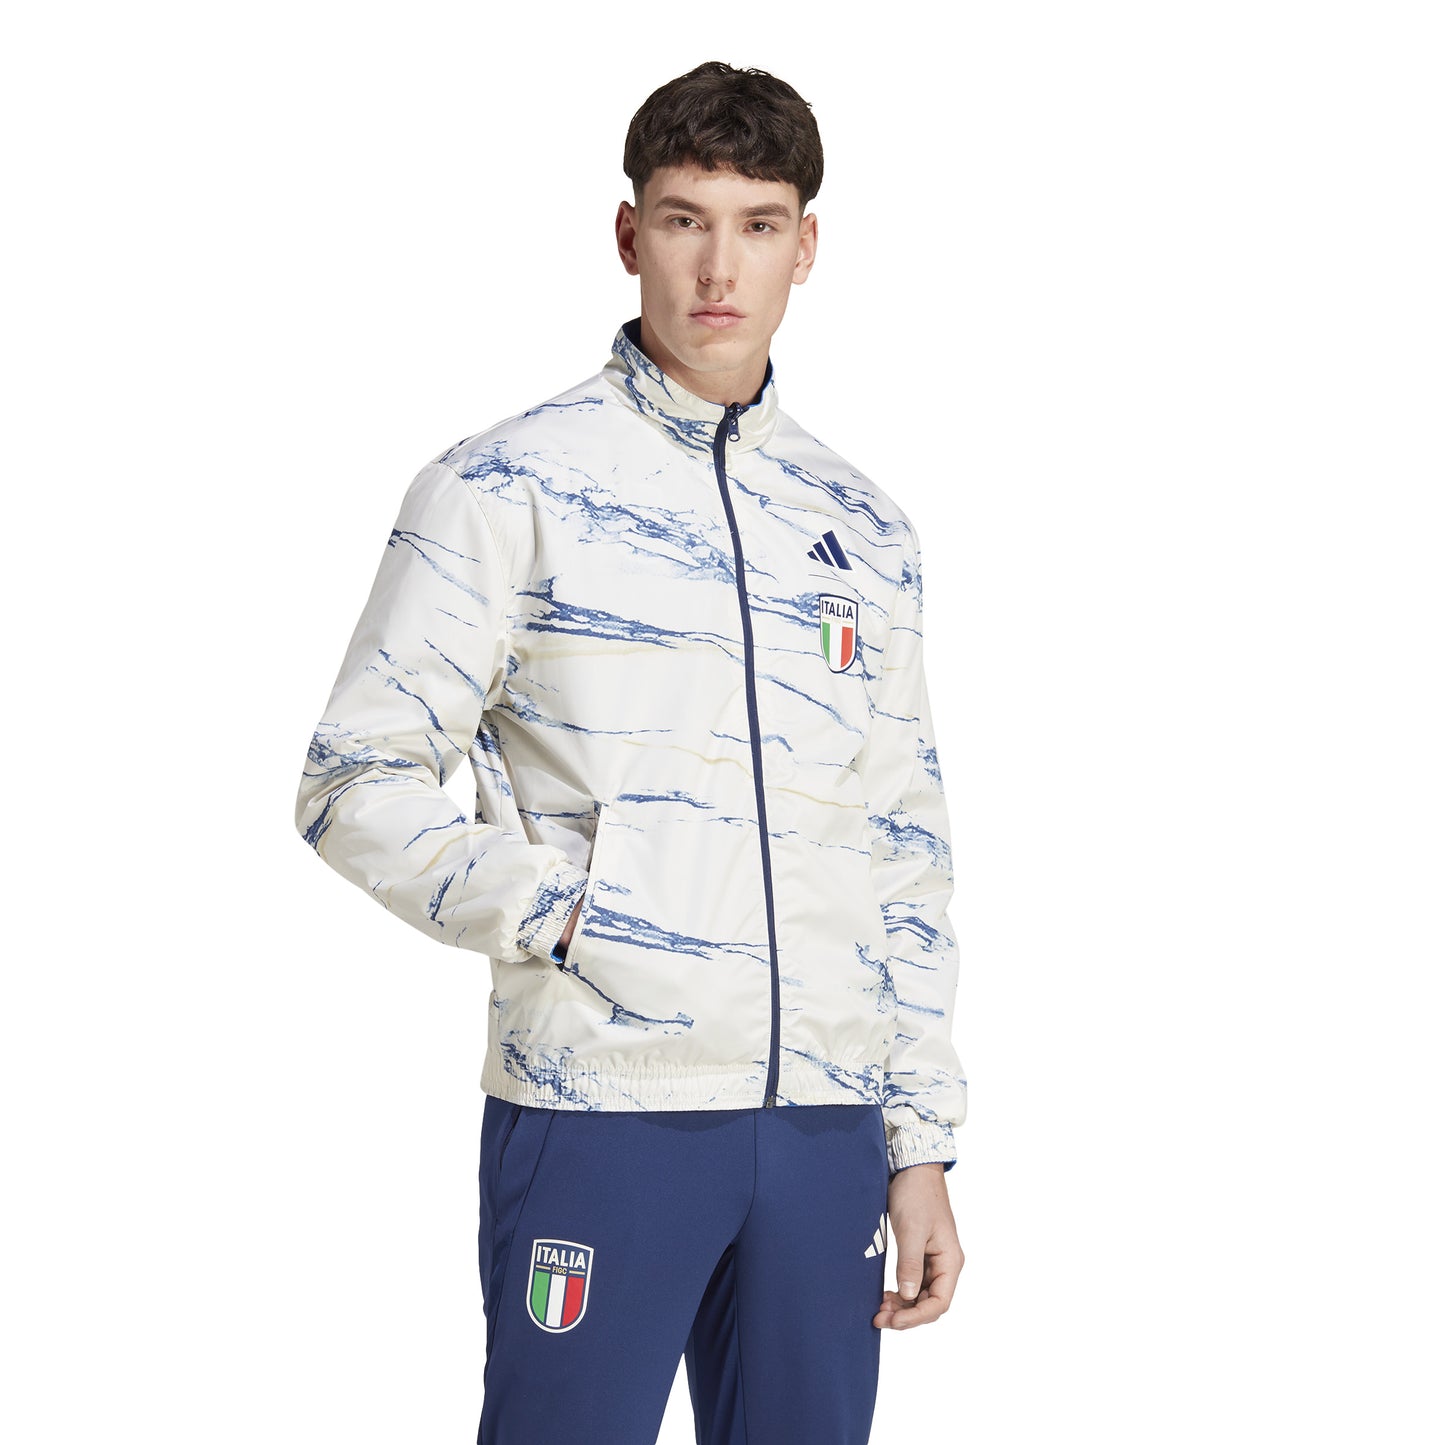 Adidas Italy Anthem Jacket